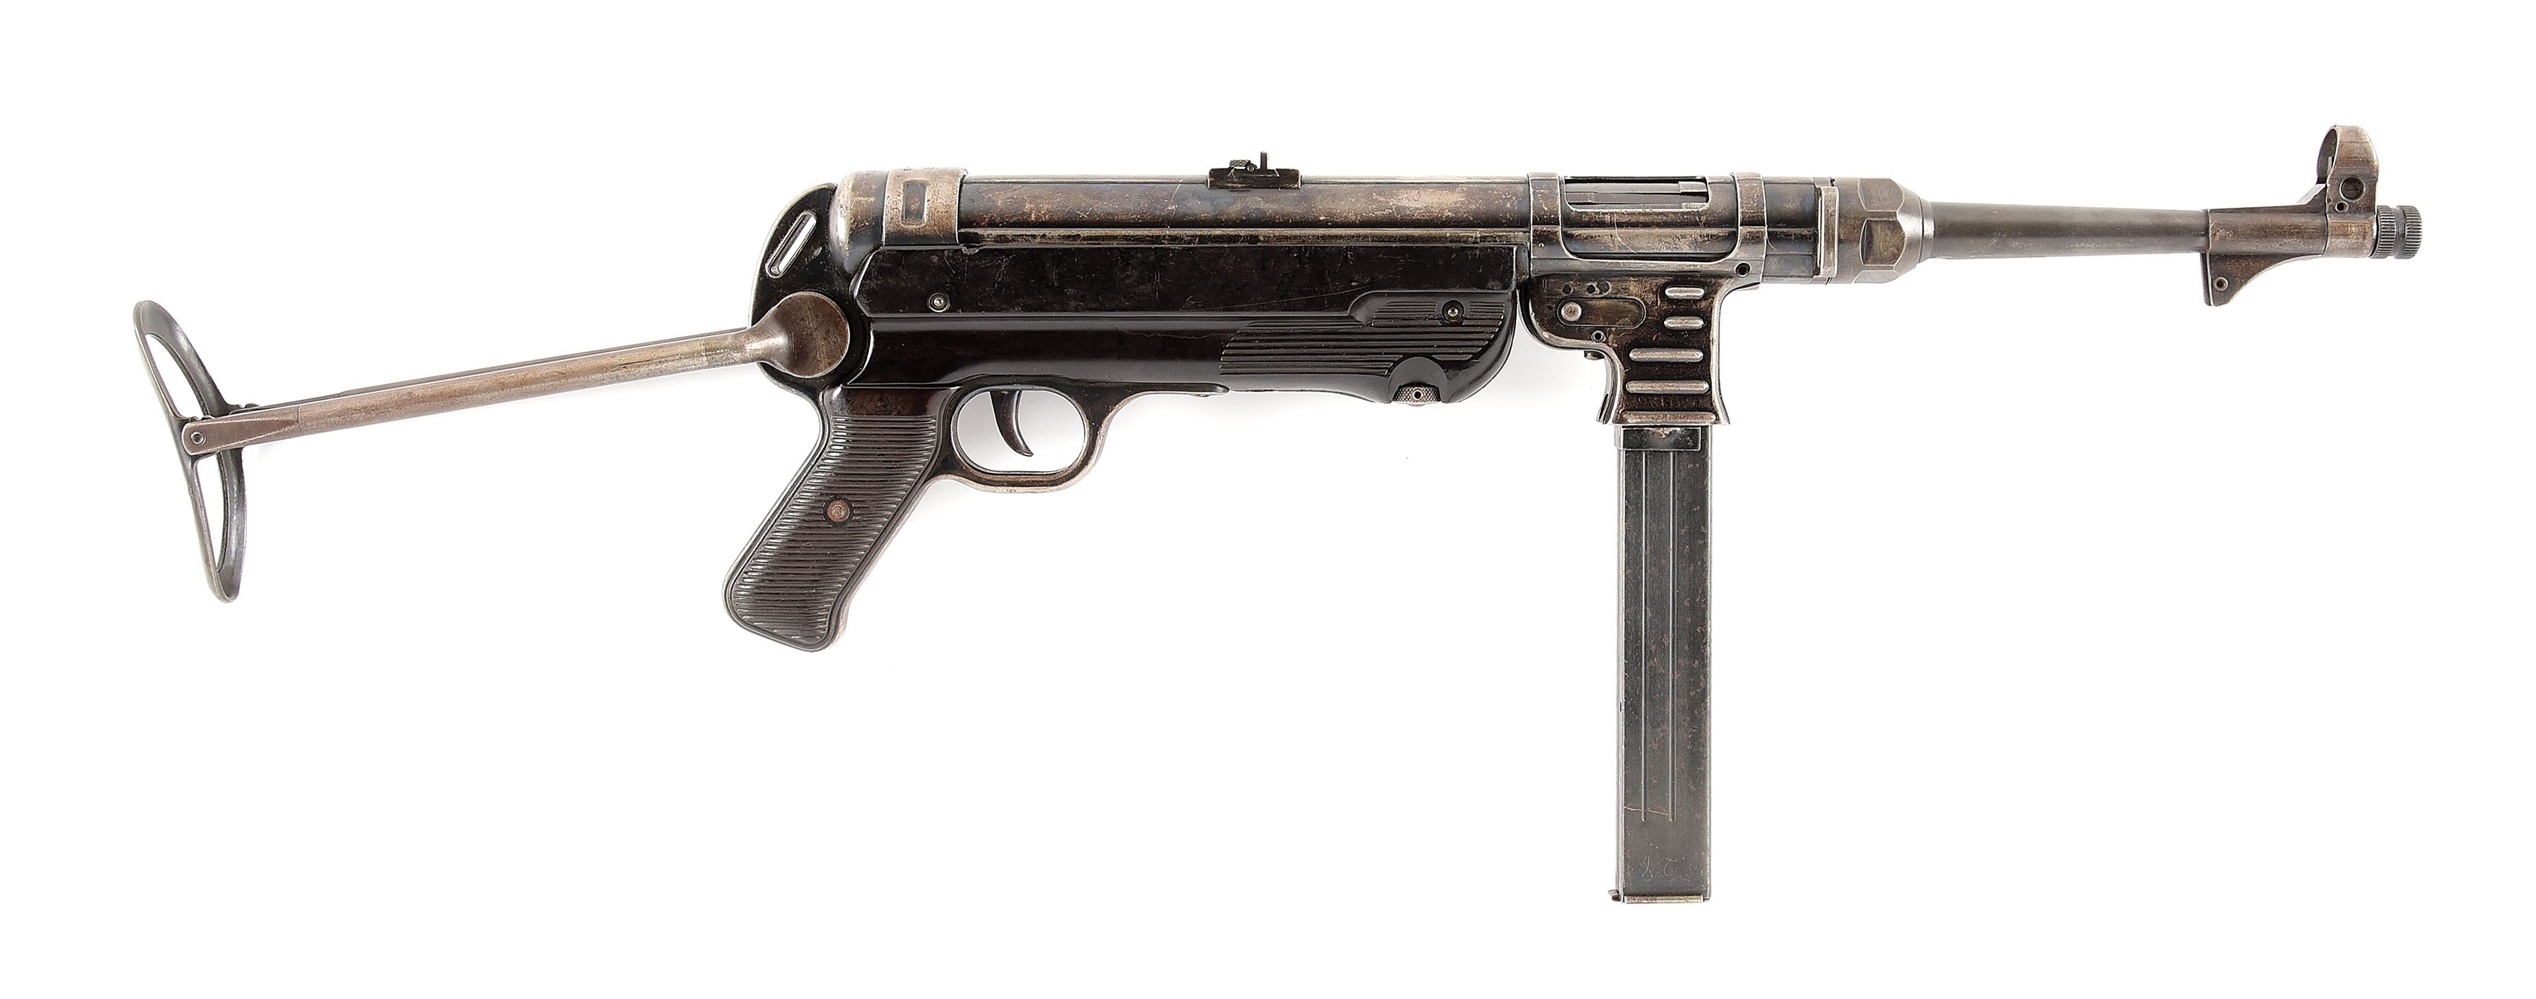 (N) GERMAN WORLD WAR II ERMA MP40 MACHINE GUN WITH ORIGINAL AMNESTY & STATE REGISTRATION PAPERWORK (CURIO & RELIC).